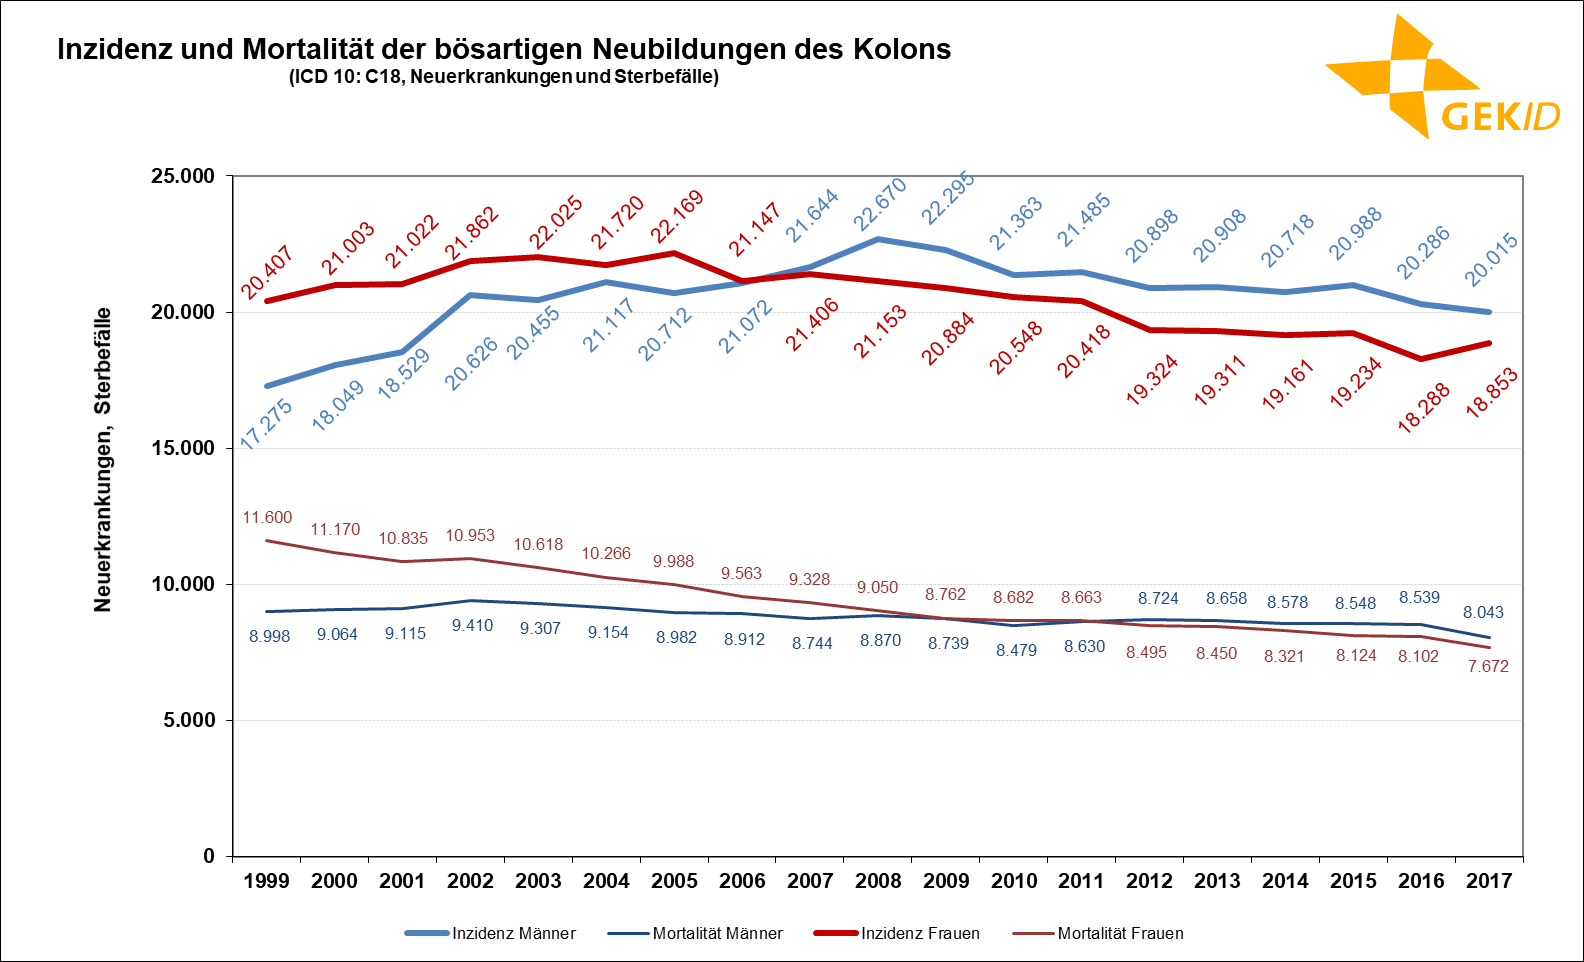 Geschätzte Inzidenz und Mortalität der bösartigen Neubildungen des Kolons (ICD 10: C18) in Deutschland – Fallzahlen